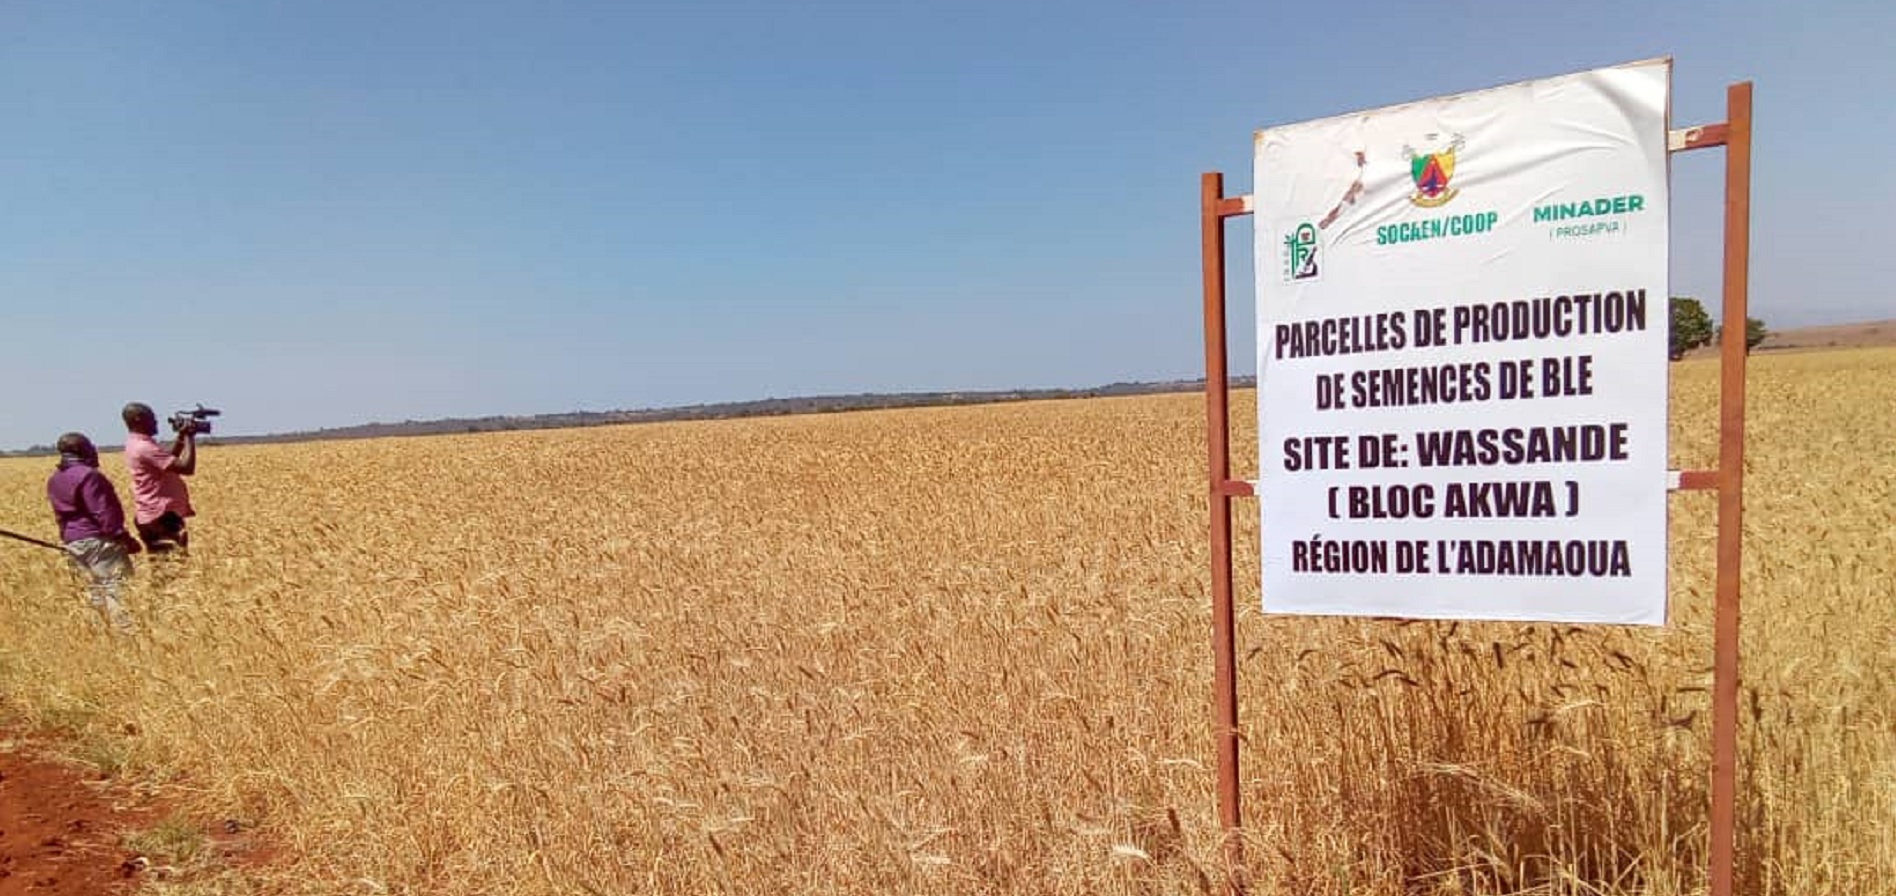 Le champ semencier de blé de 45 ha de Wassandé prêt pour la récolte